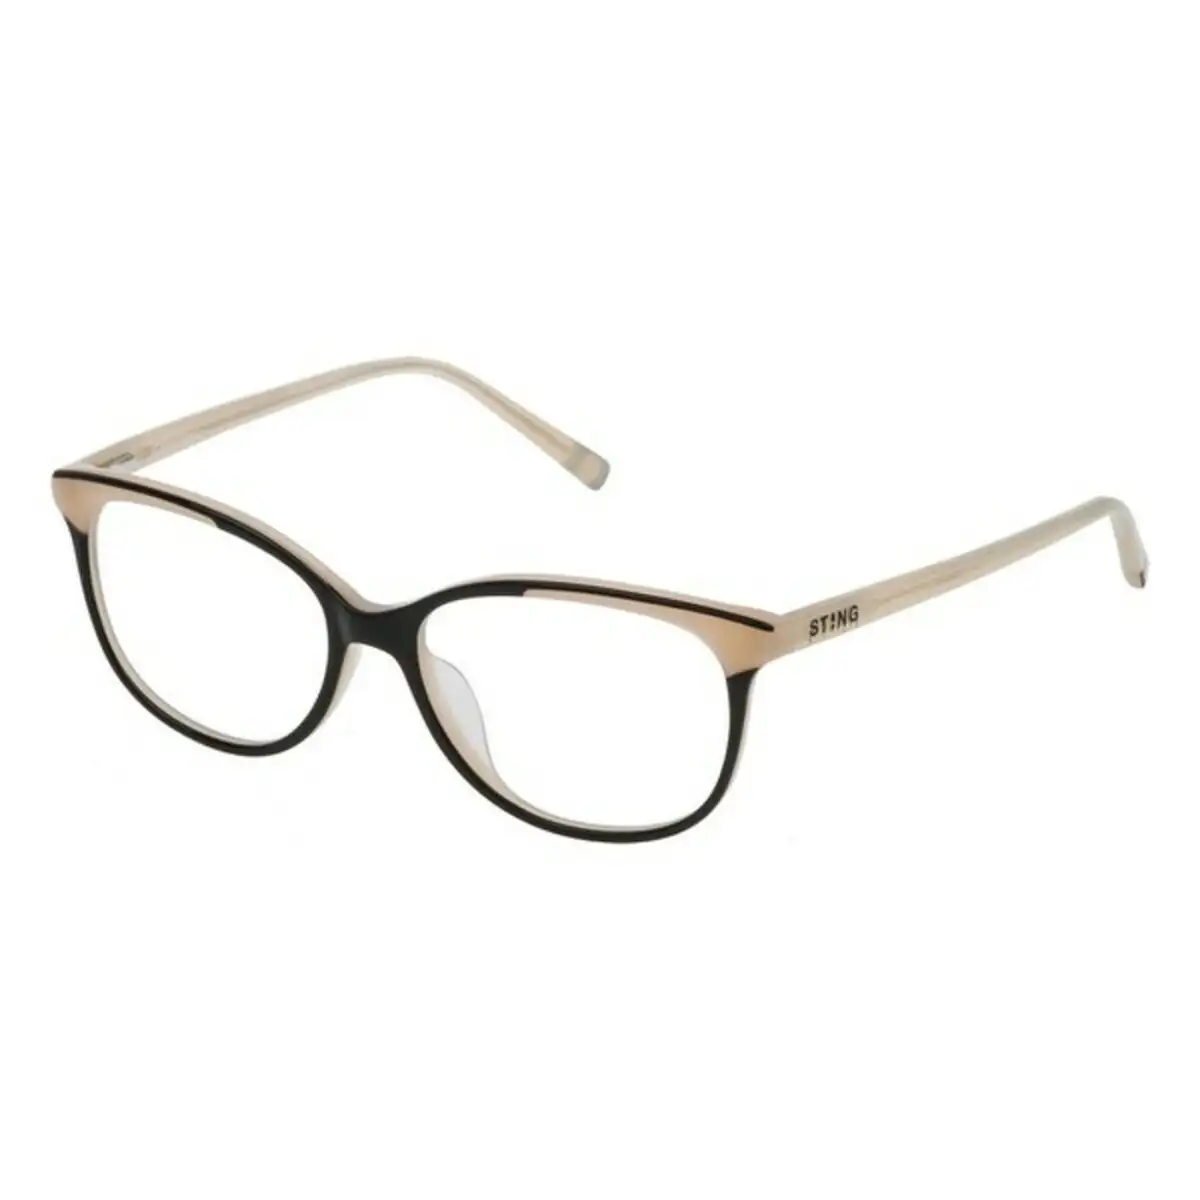 Monture de lunettes femme sting vst117520acs o 52 mm _4107. DIAYTAR SENEGAL - Votre Passage vers le Chic et l'Élégance. Naviguez à travers notre boutique en ligne pour trouver des produits qui ajoutent une touche sophistiquée à votre style.